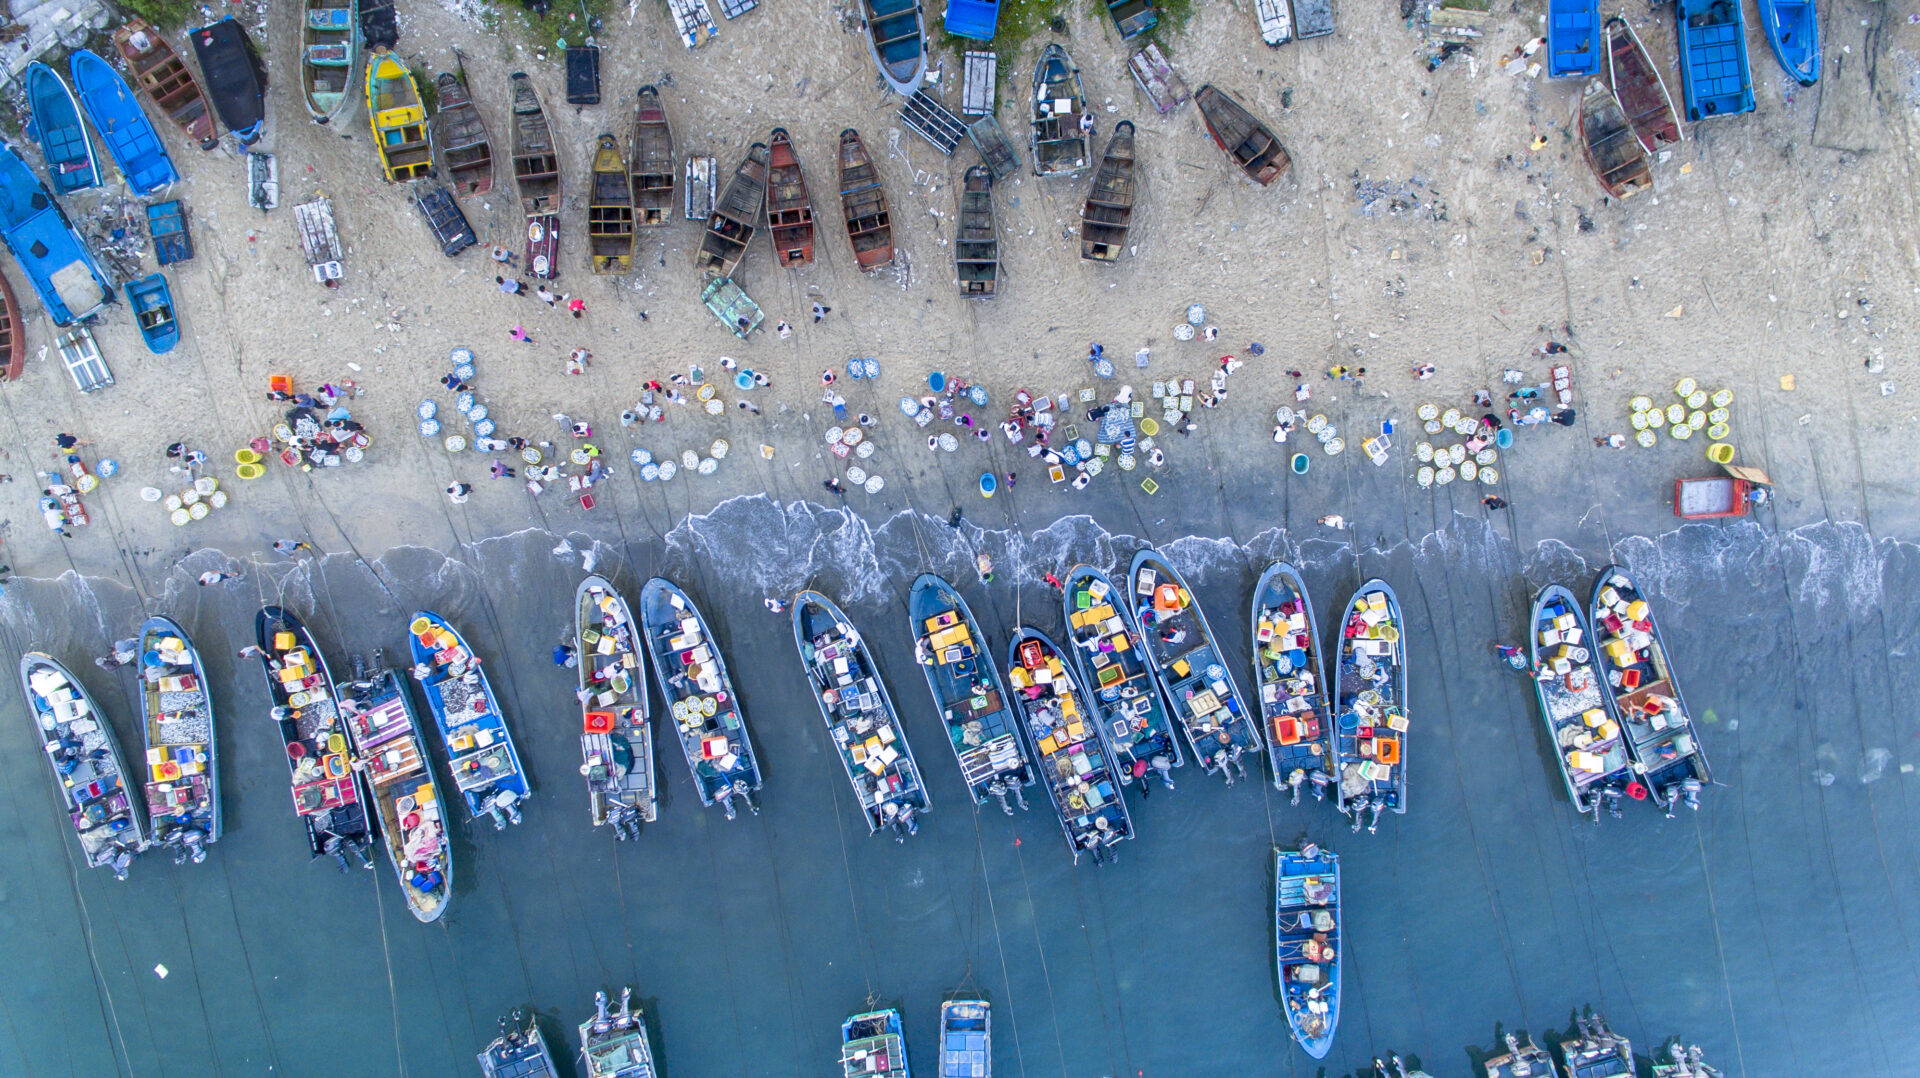 Bird’s eye view of fishing market on beach, China